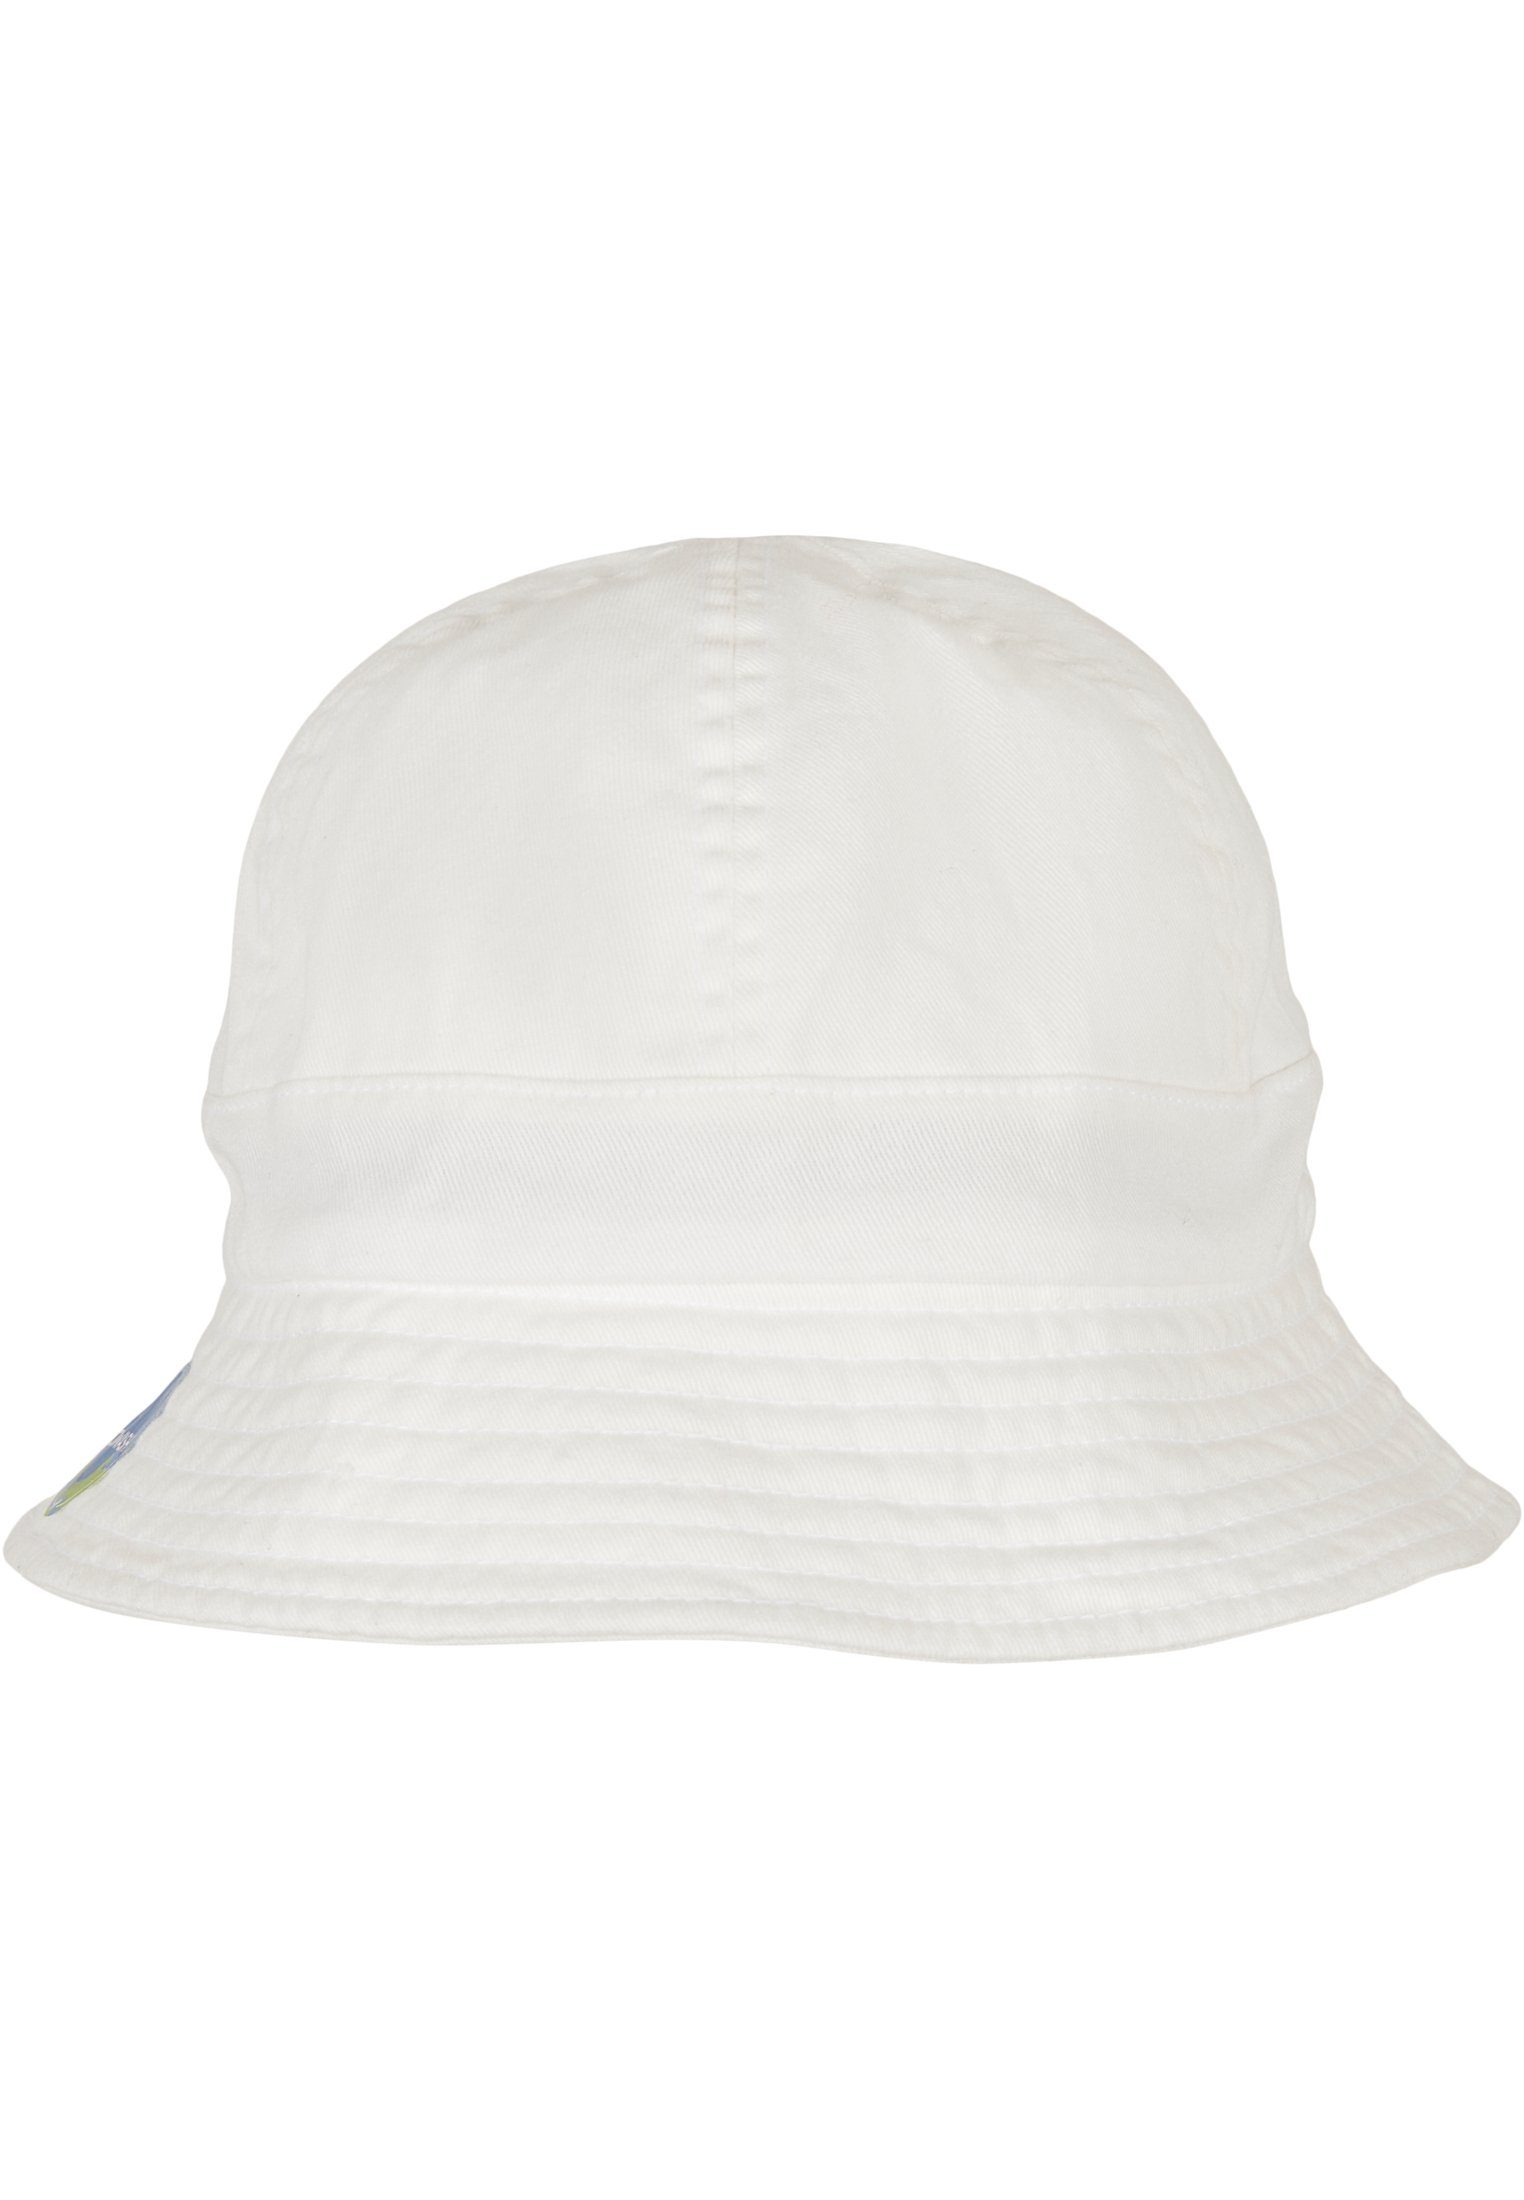 Flexfit Flex Cap Accessoires Flexfit Tennis white Notop Washing Eco Hat